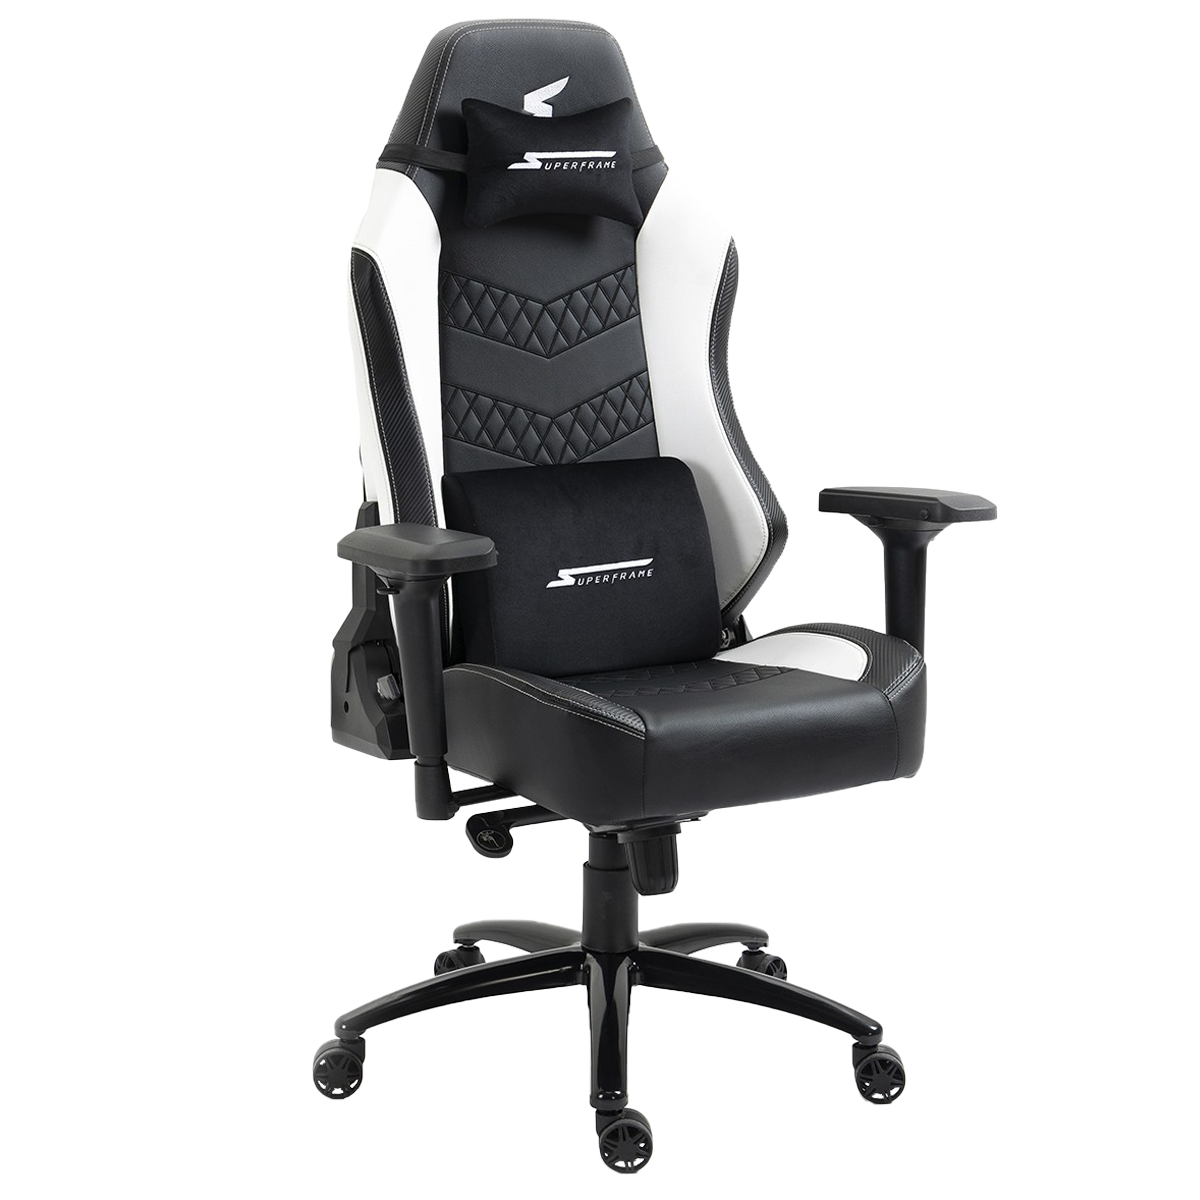 Cadeira Gamer SuperFrame Icelord, Reclinável, 4D, Suporta até 180KG, Preto e Branco, SFCD-CLBK/WH